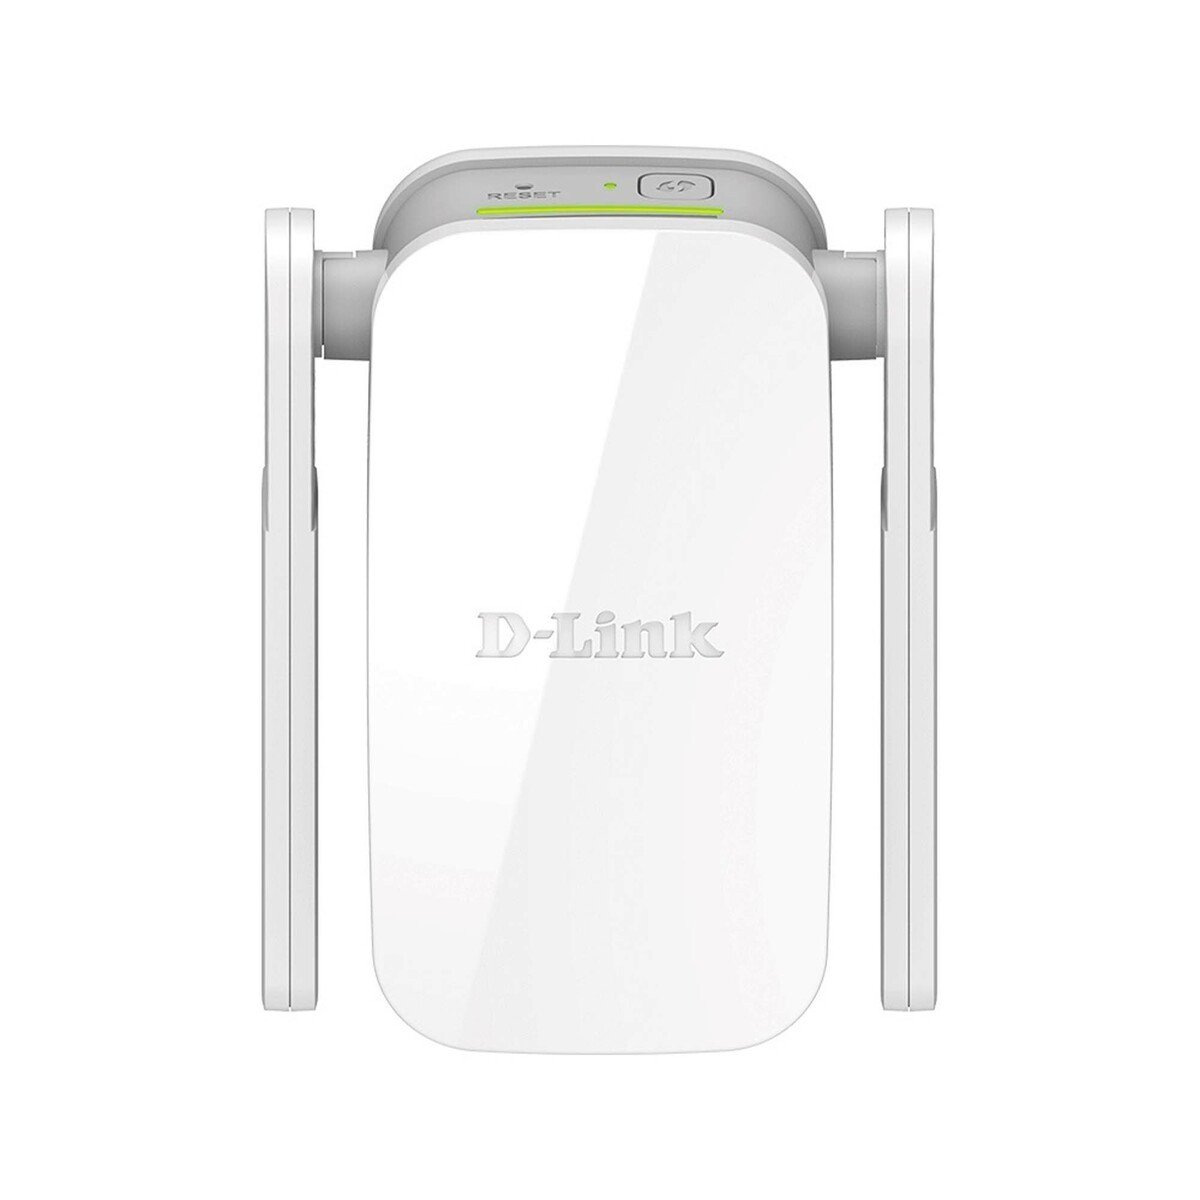 D-Link AC1200 Wi-Fi Range Extender DAP-1610